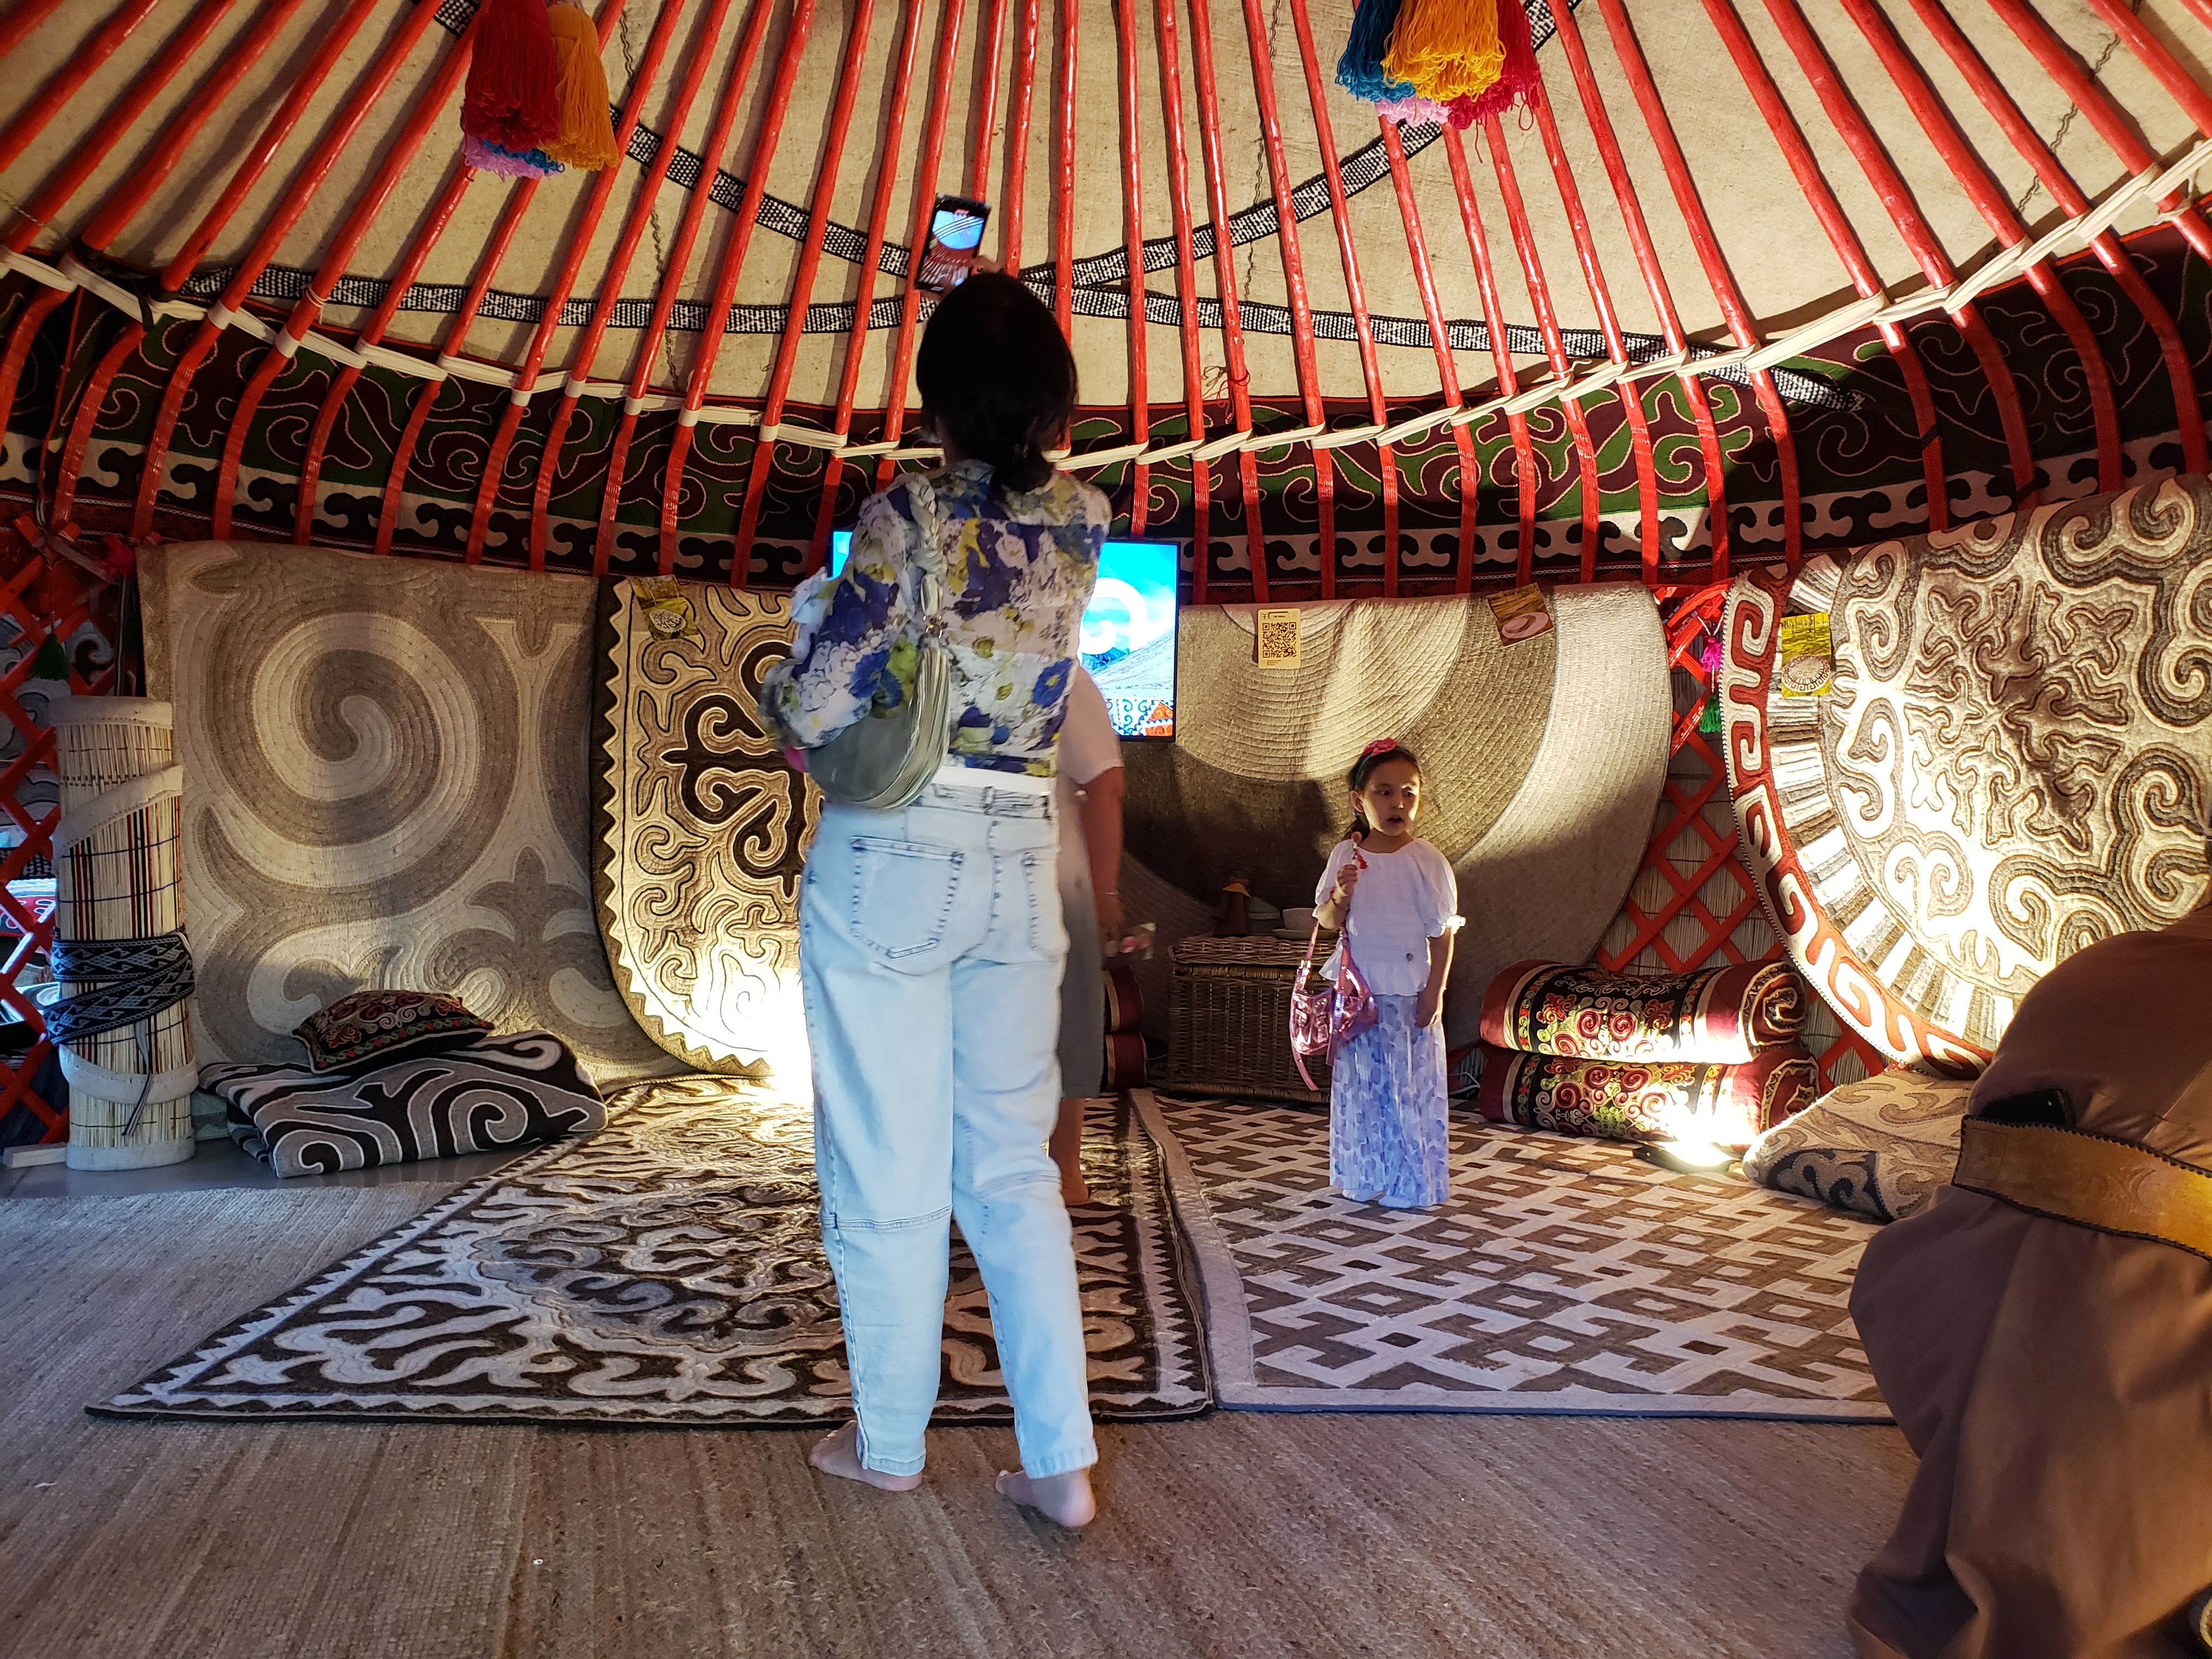 inside a yurt